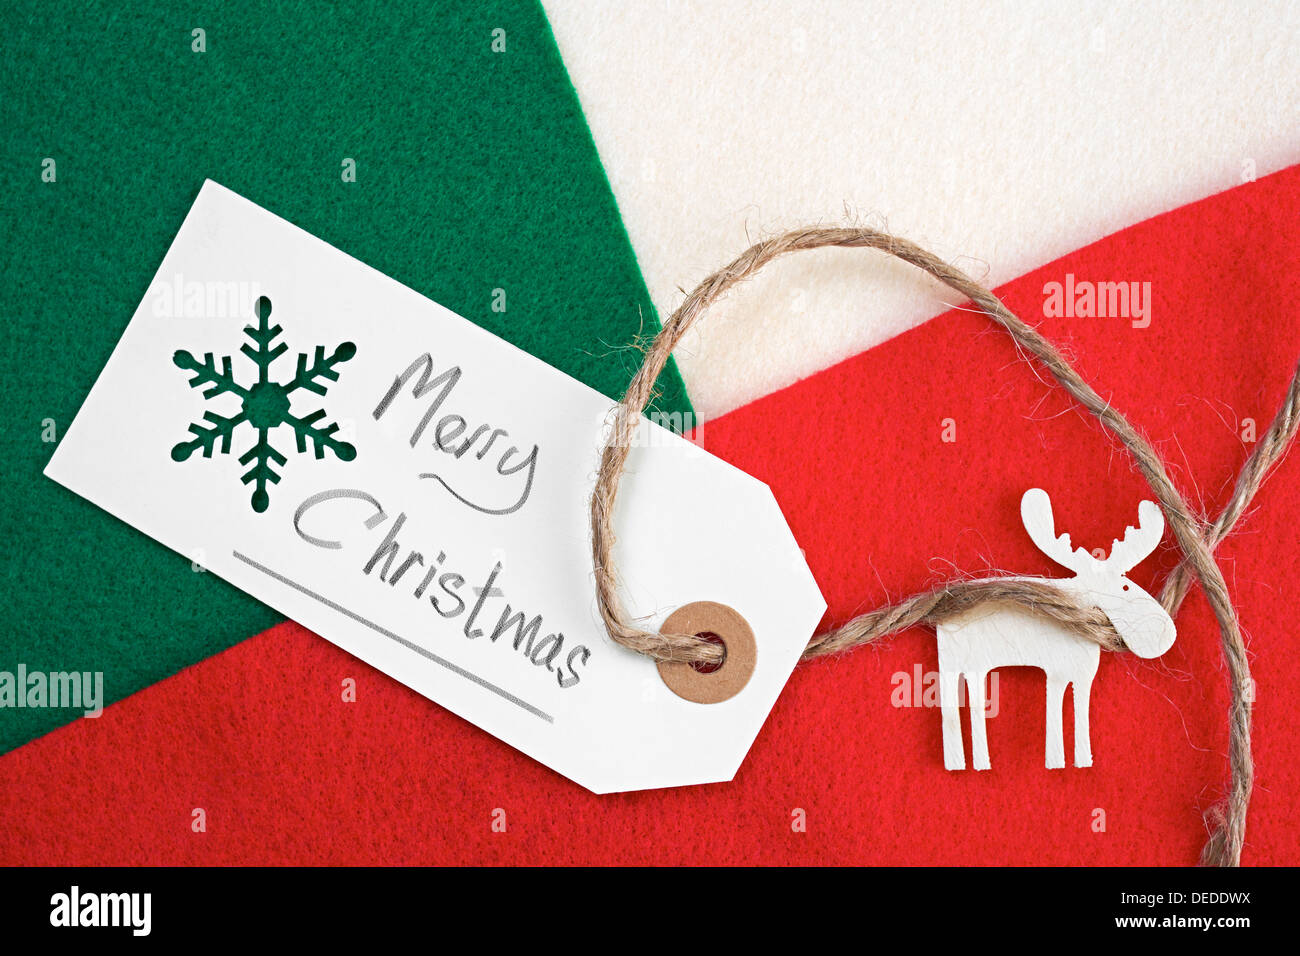 Weihnachten Geschenkanhänger auf ein rot, grün und Creme fühlte materiellen Hintergrund. Stockfoto